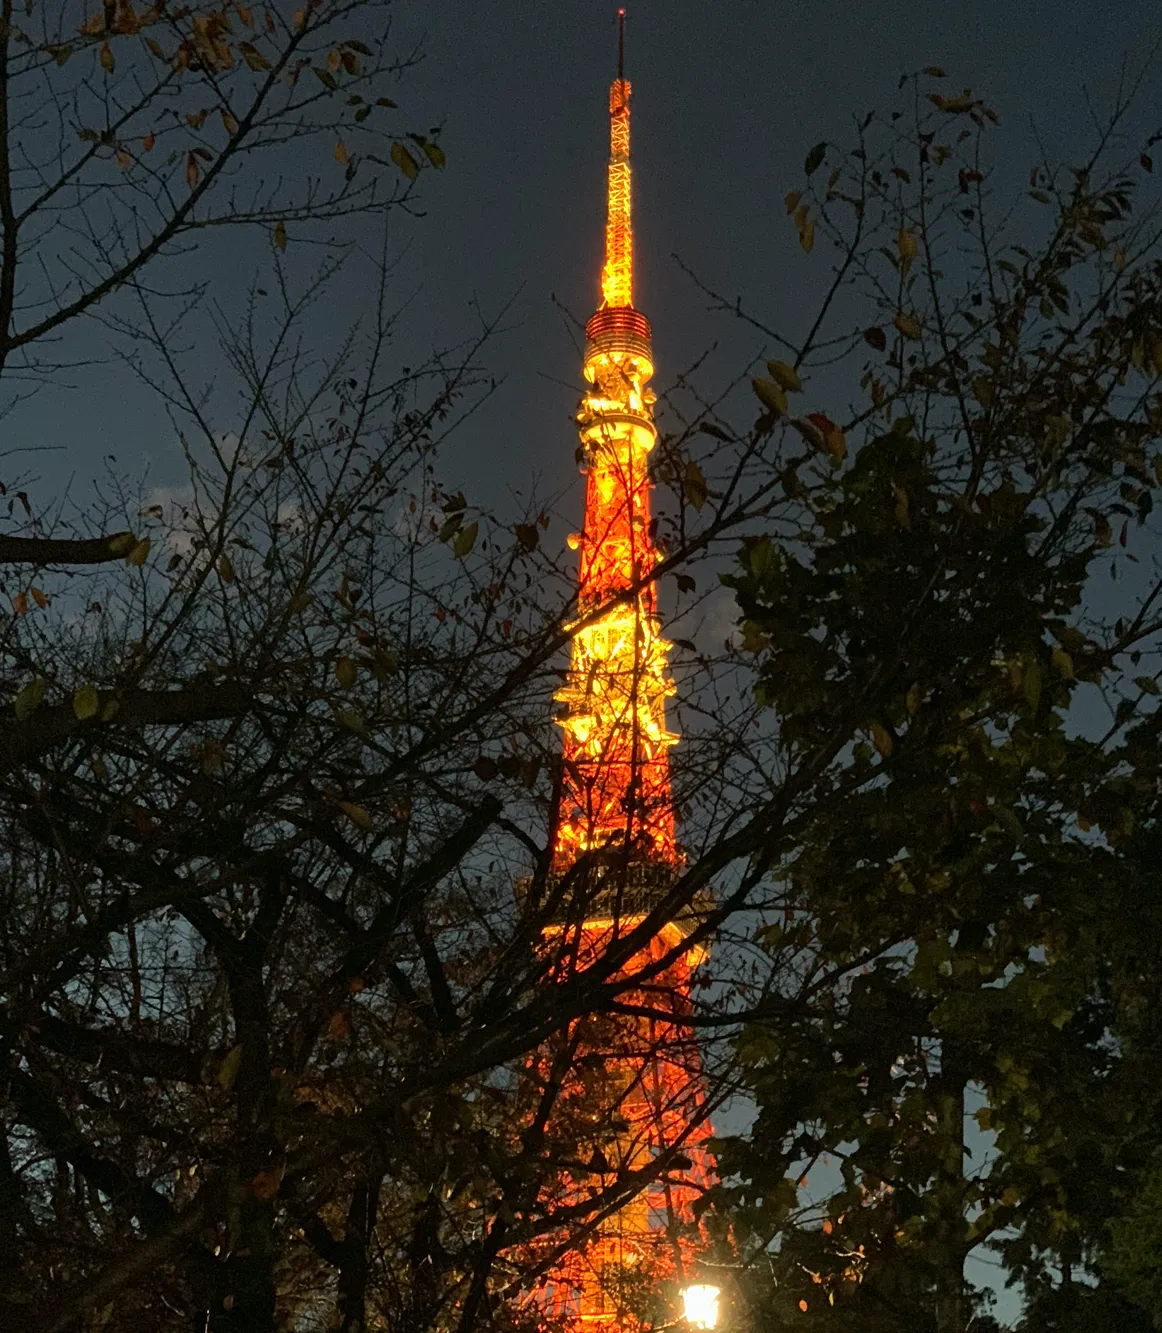 マッチングアプリペアーズで出会ったイケメンとの東京タワーデートの写真